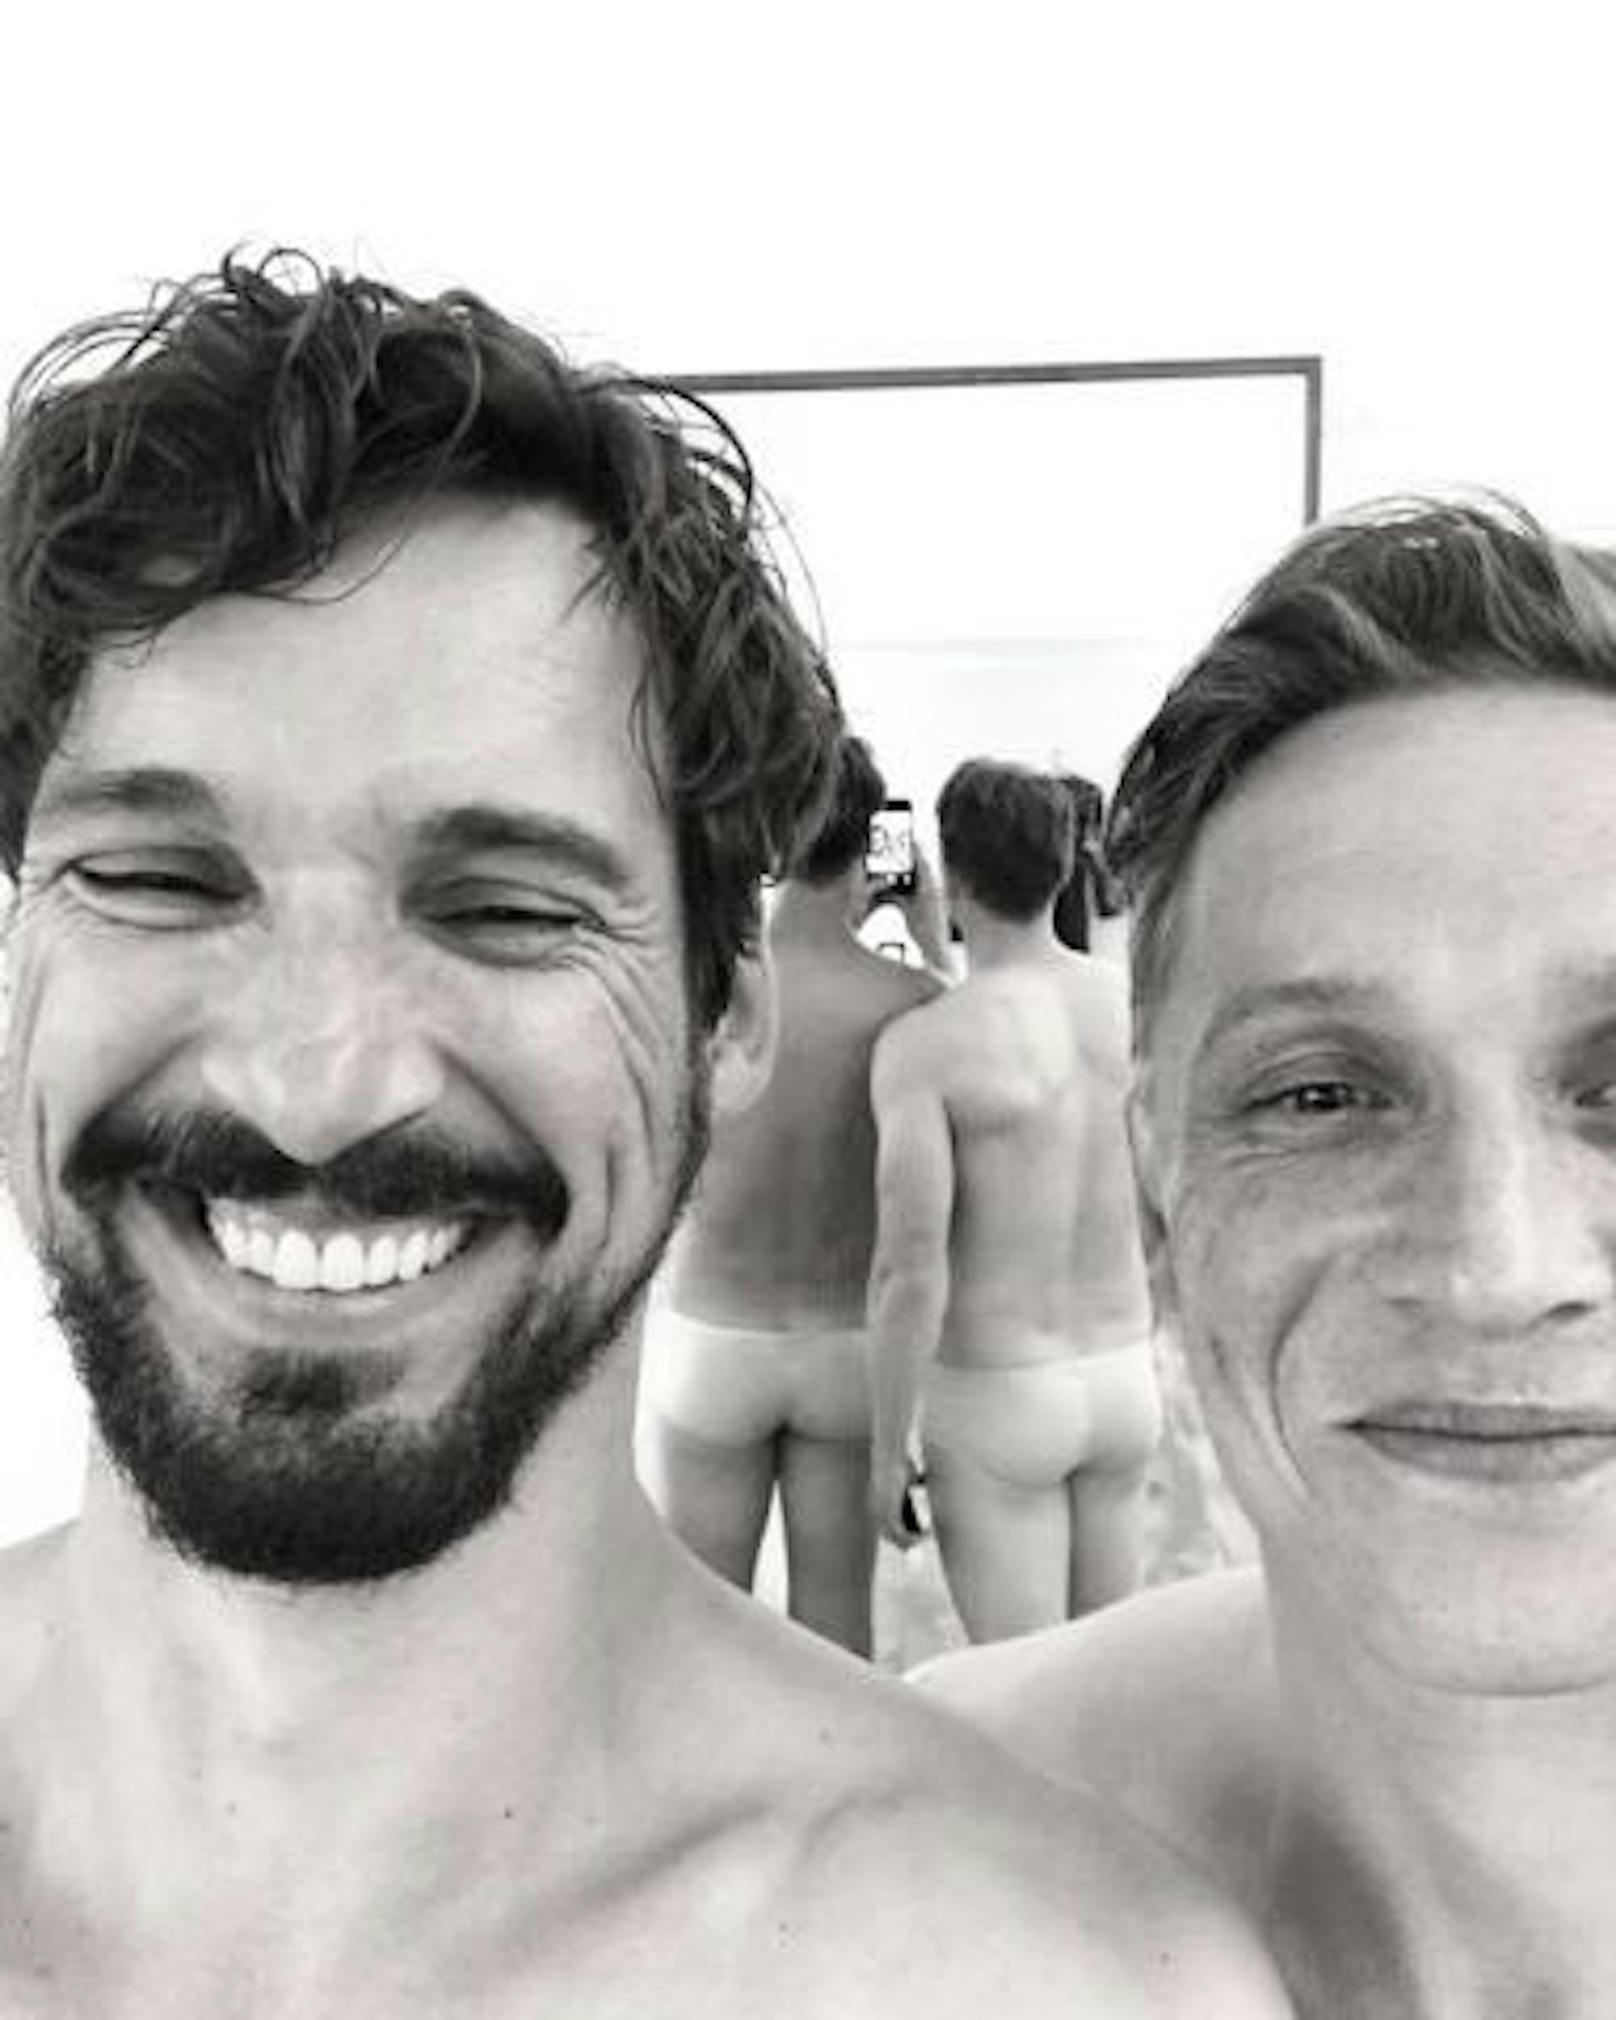 Auf diesem Bild von Florian David Fitz und Matthias Schweighöfer muss man genauer hinsehen, damit man erkennt, dass sie nicht komplett nackt sind.